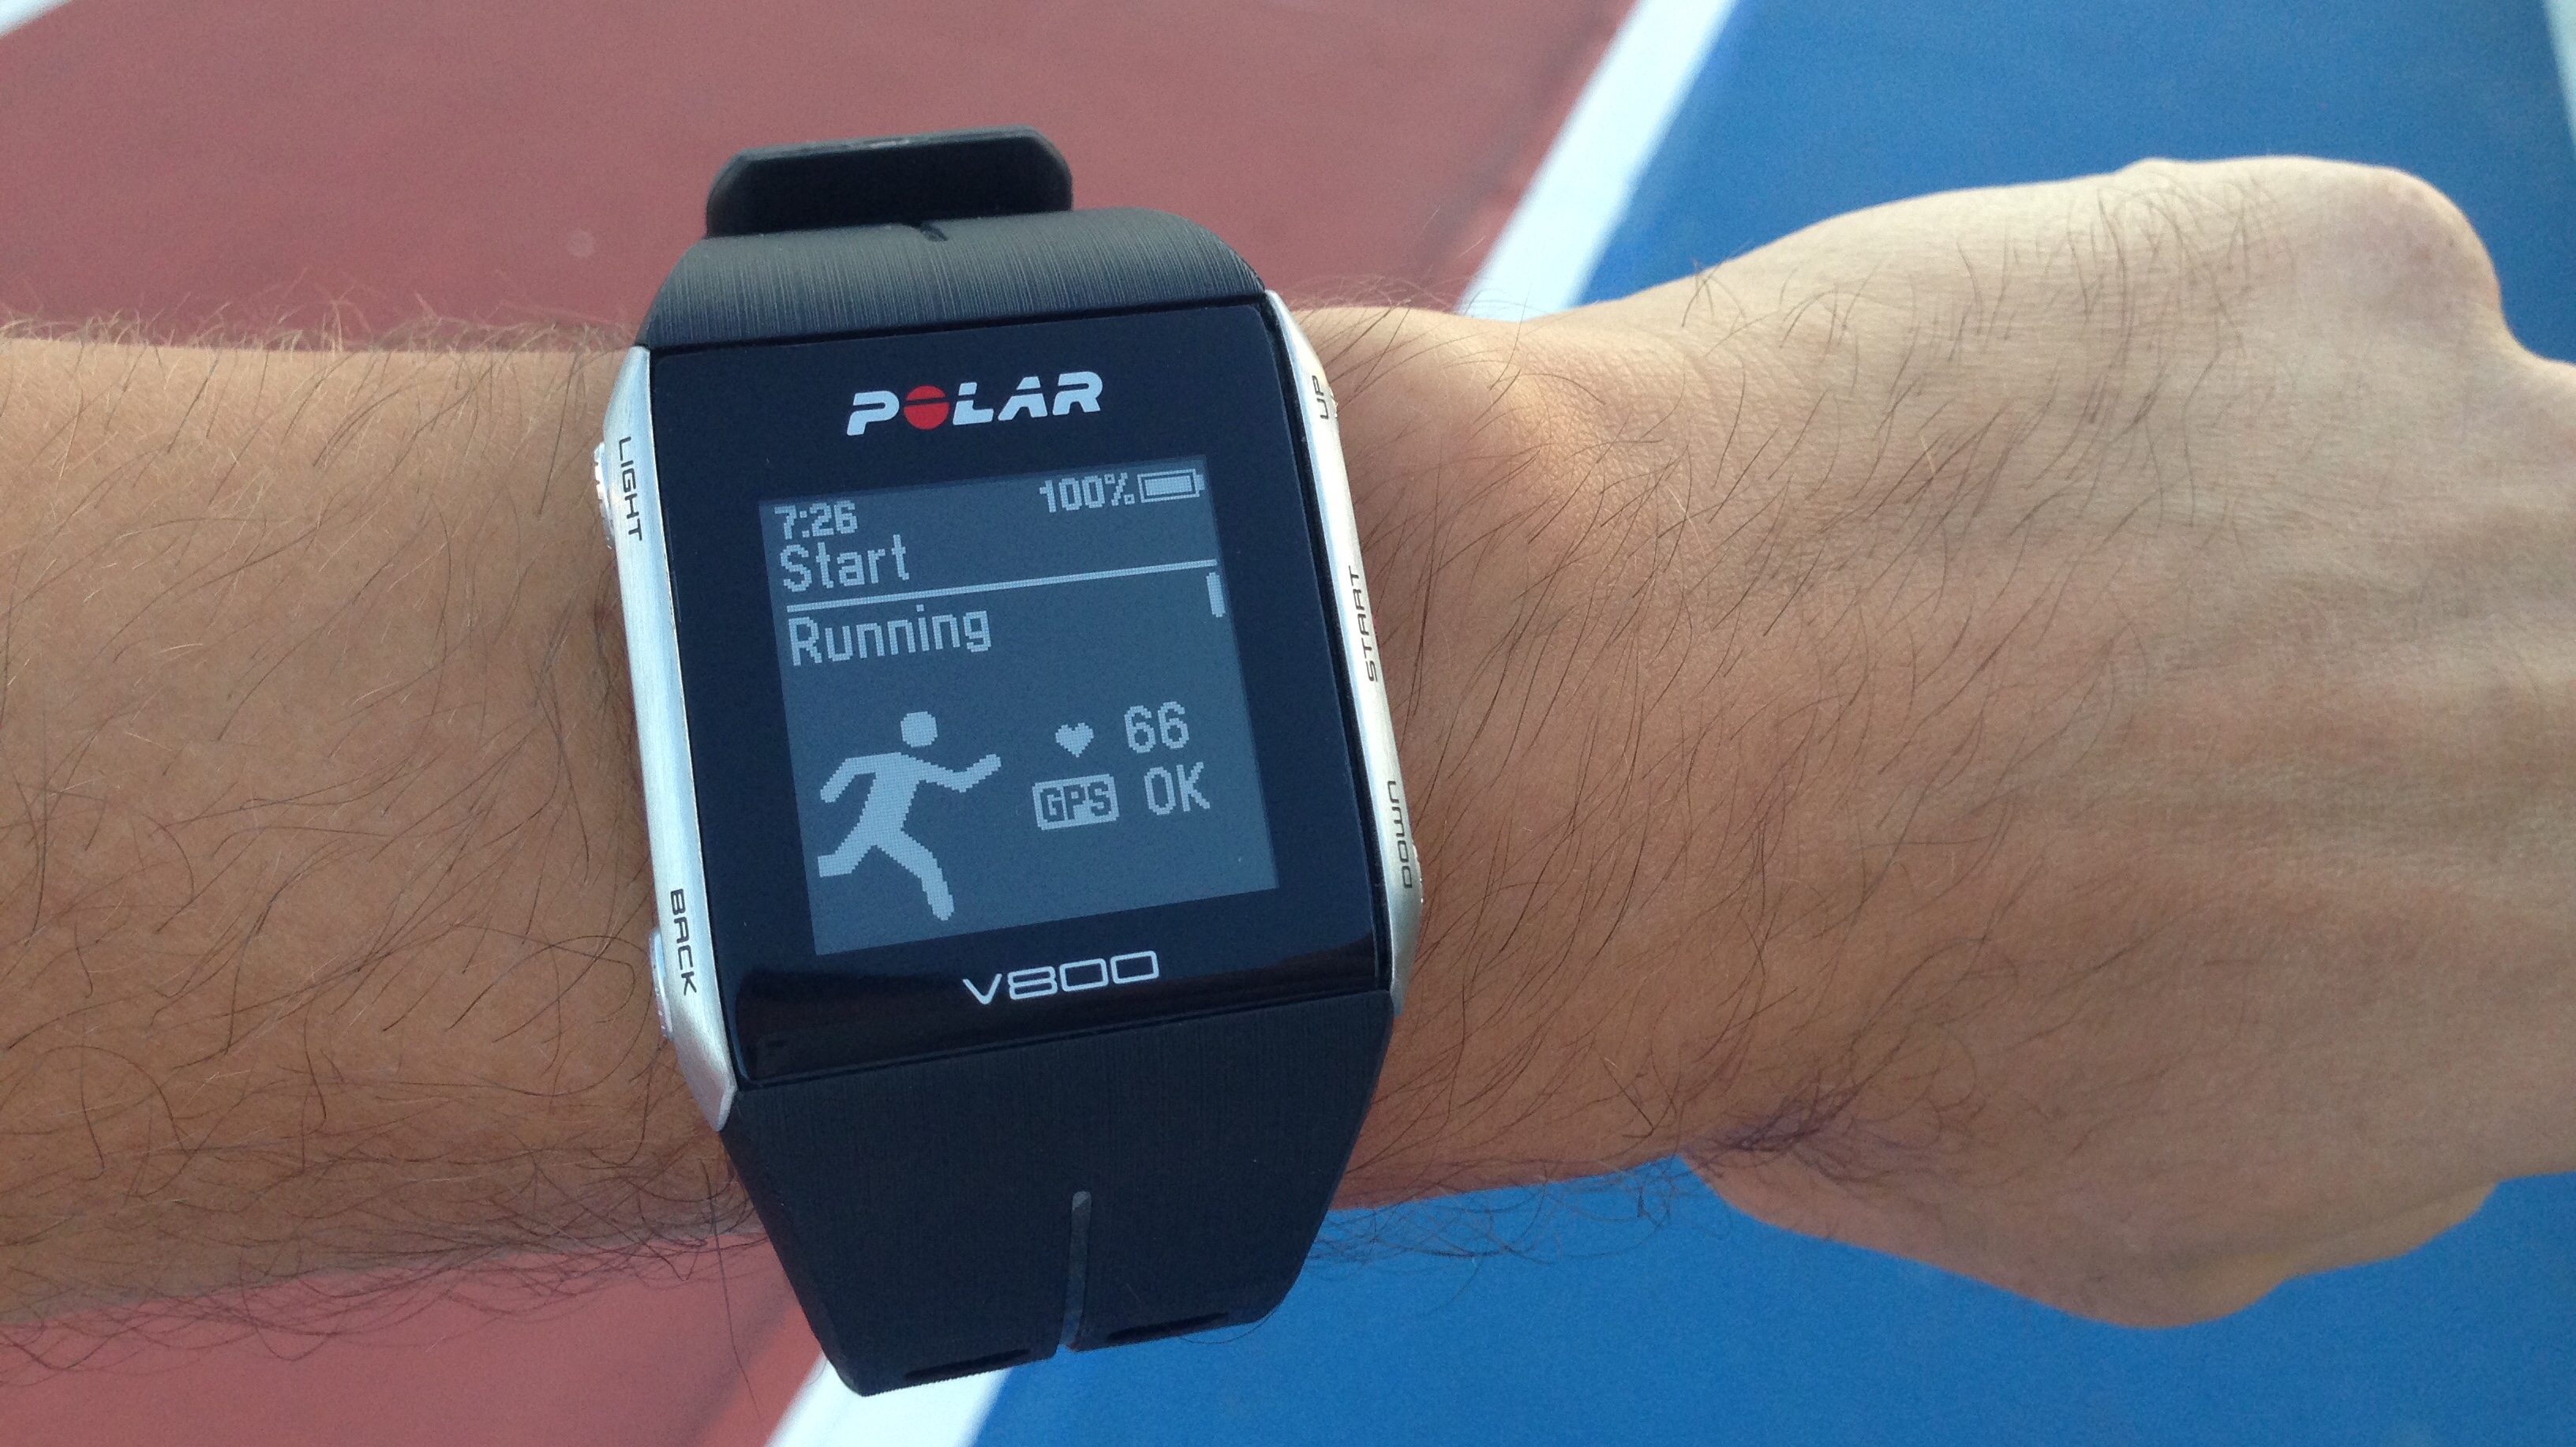 ОБЗОР: GPS часы Polar V800 для бега и триатлона Лайфхакер. 